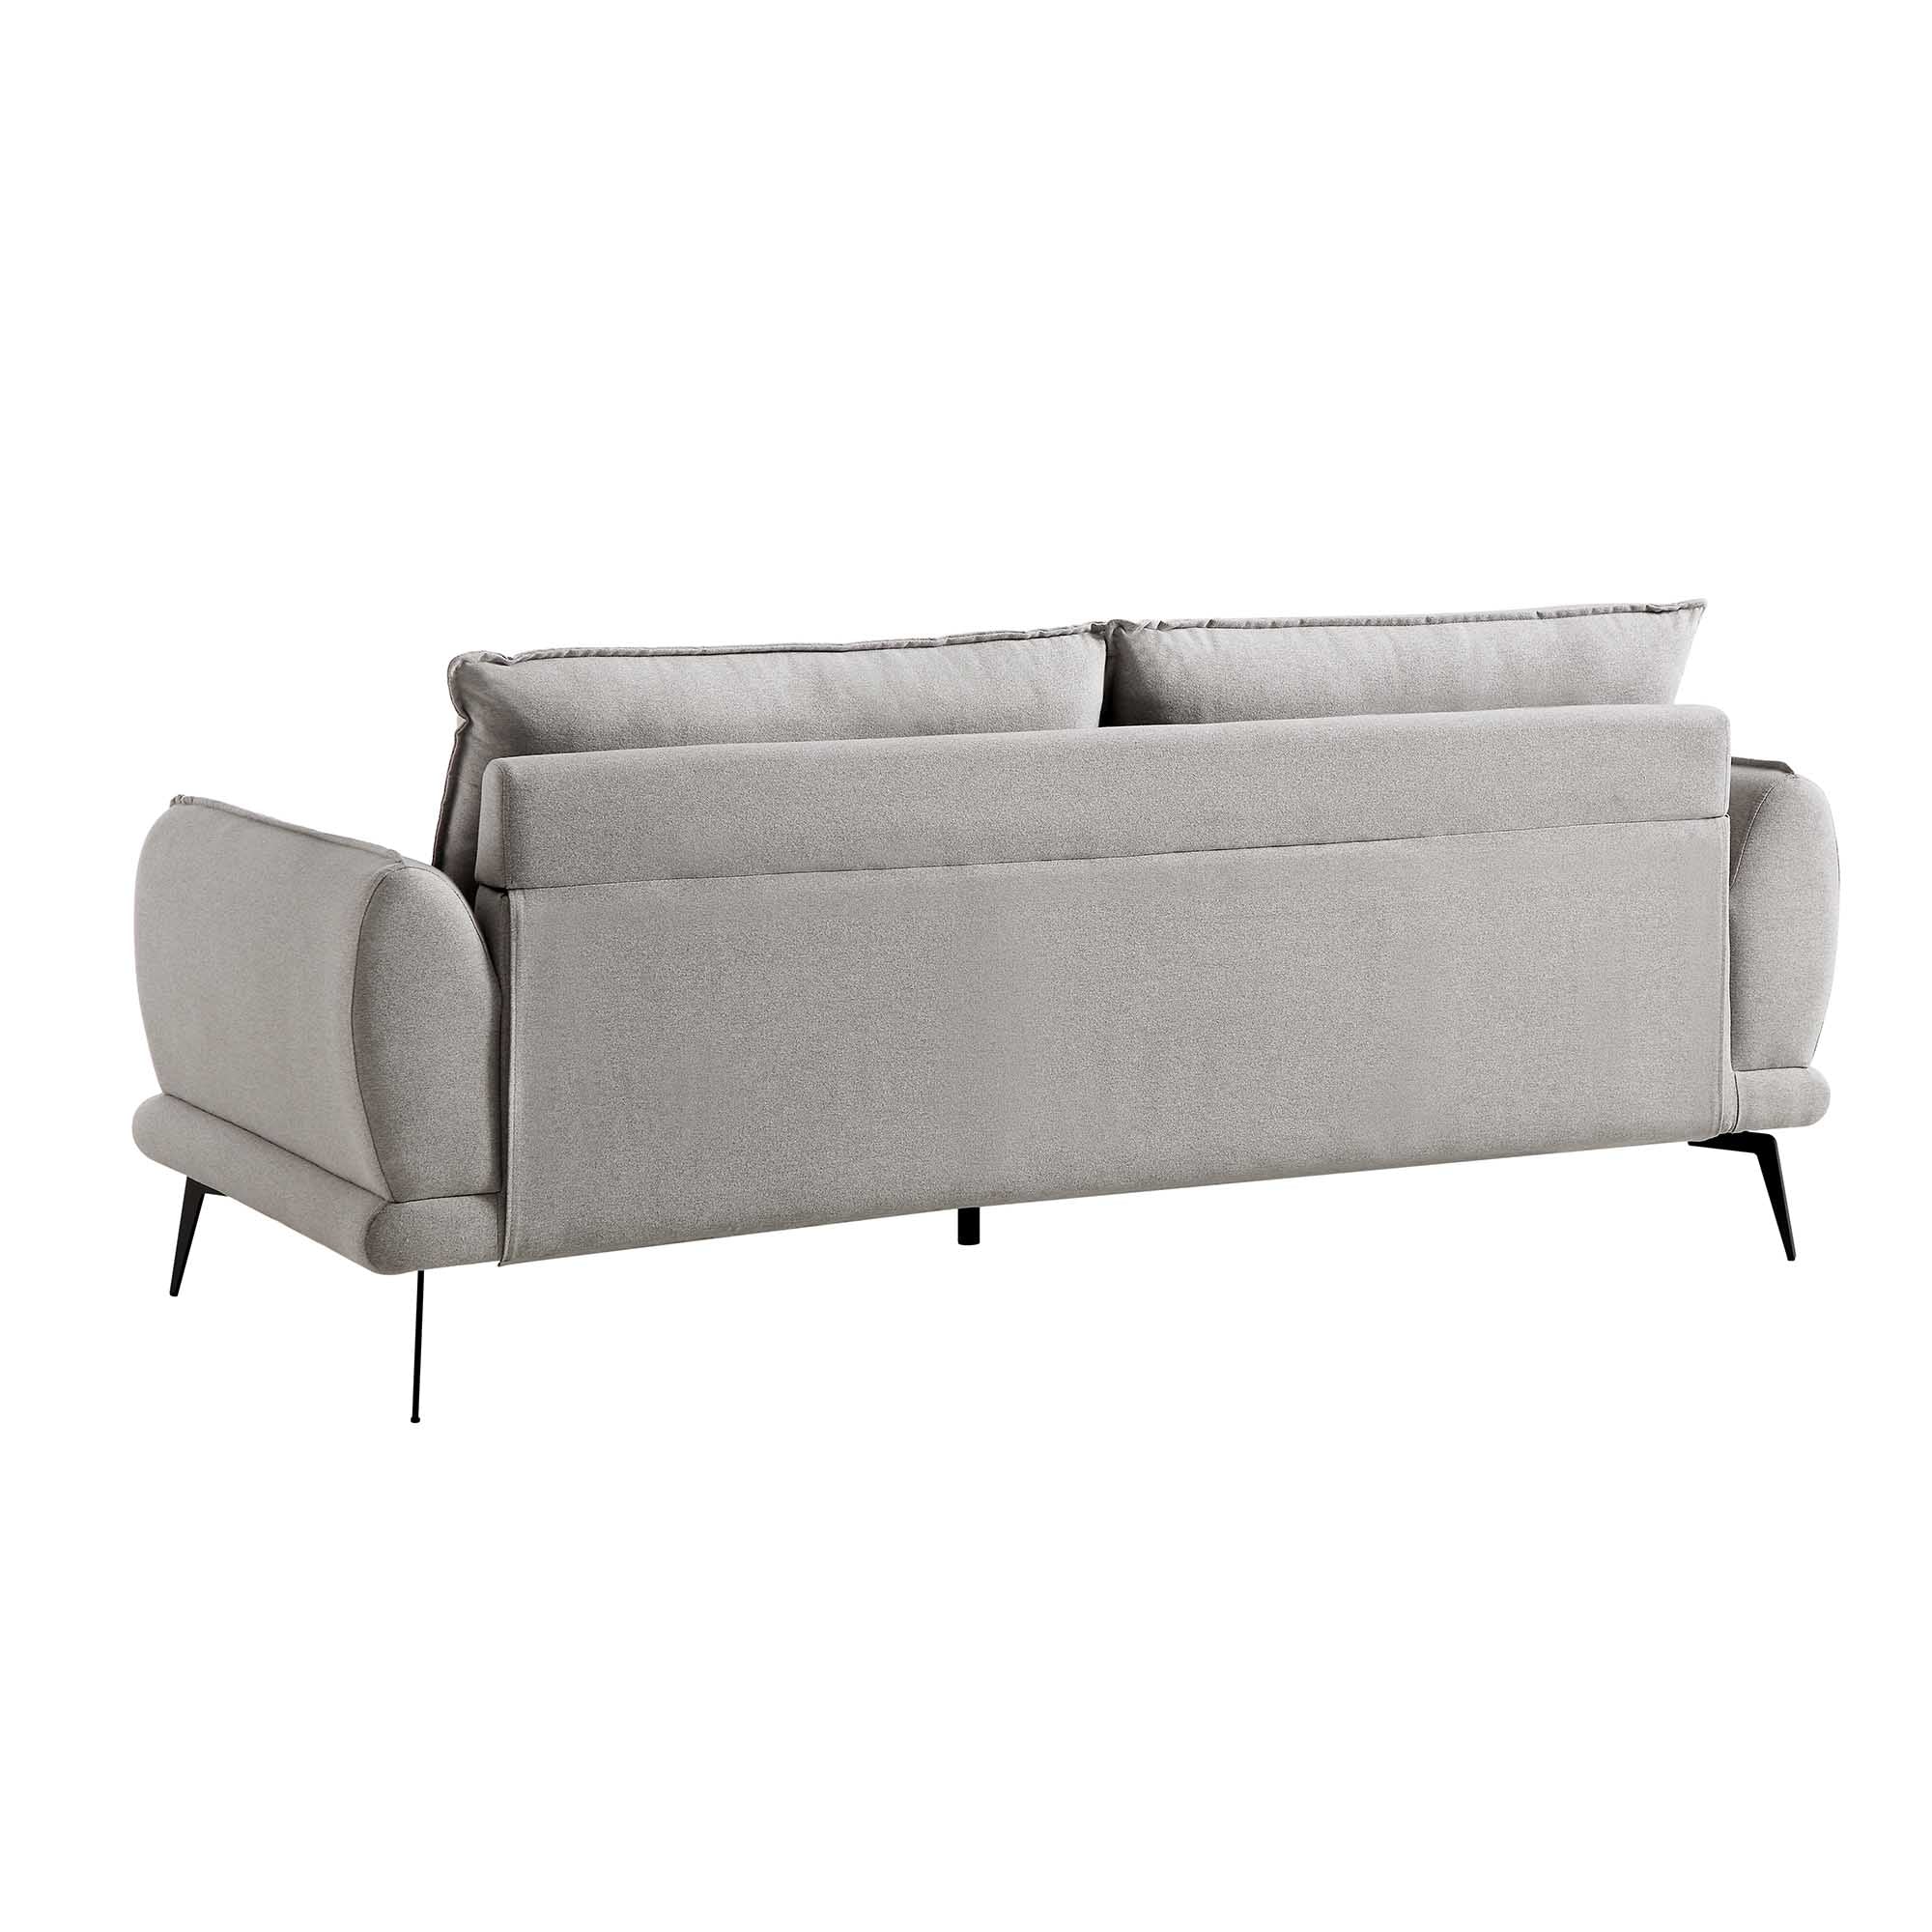 Obriel Grey Marl Fabric Sofa, 3-Seater